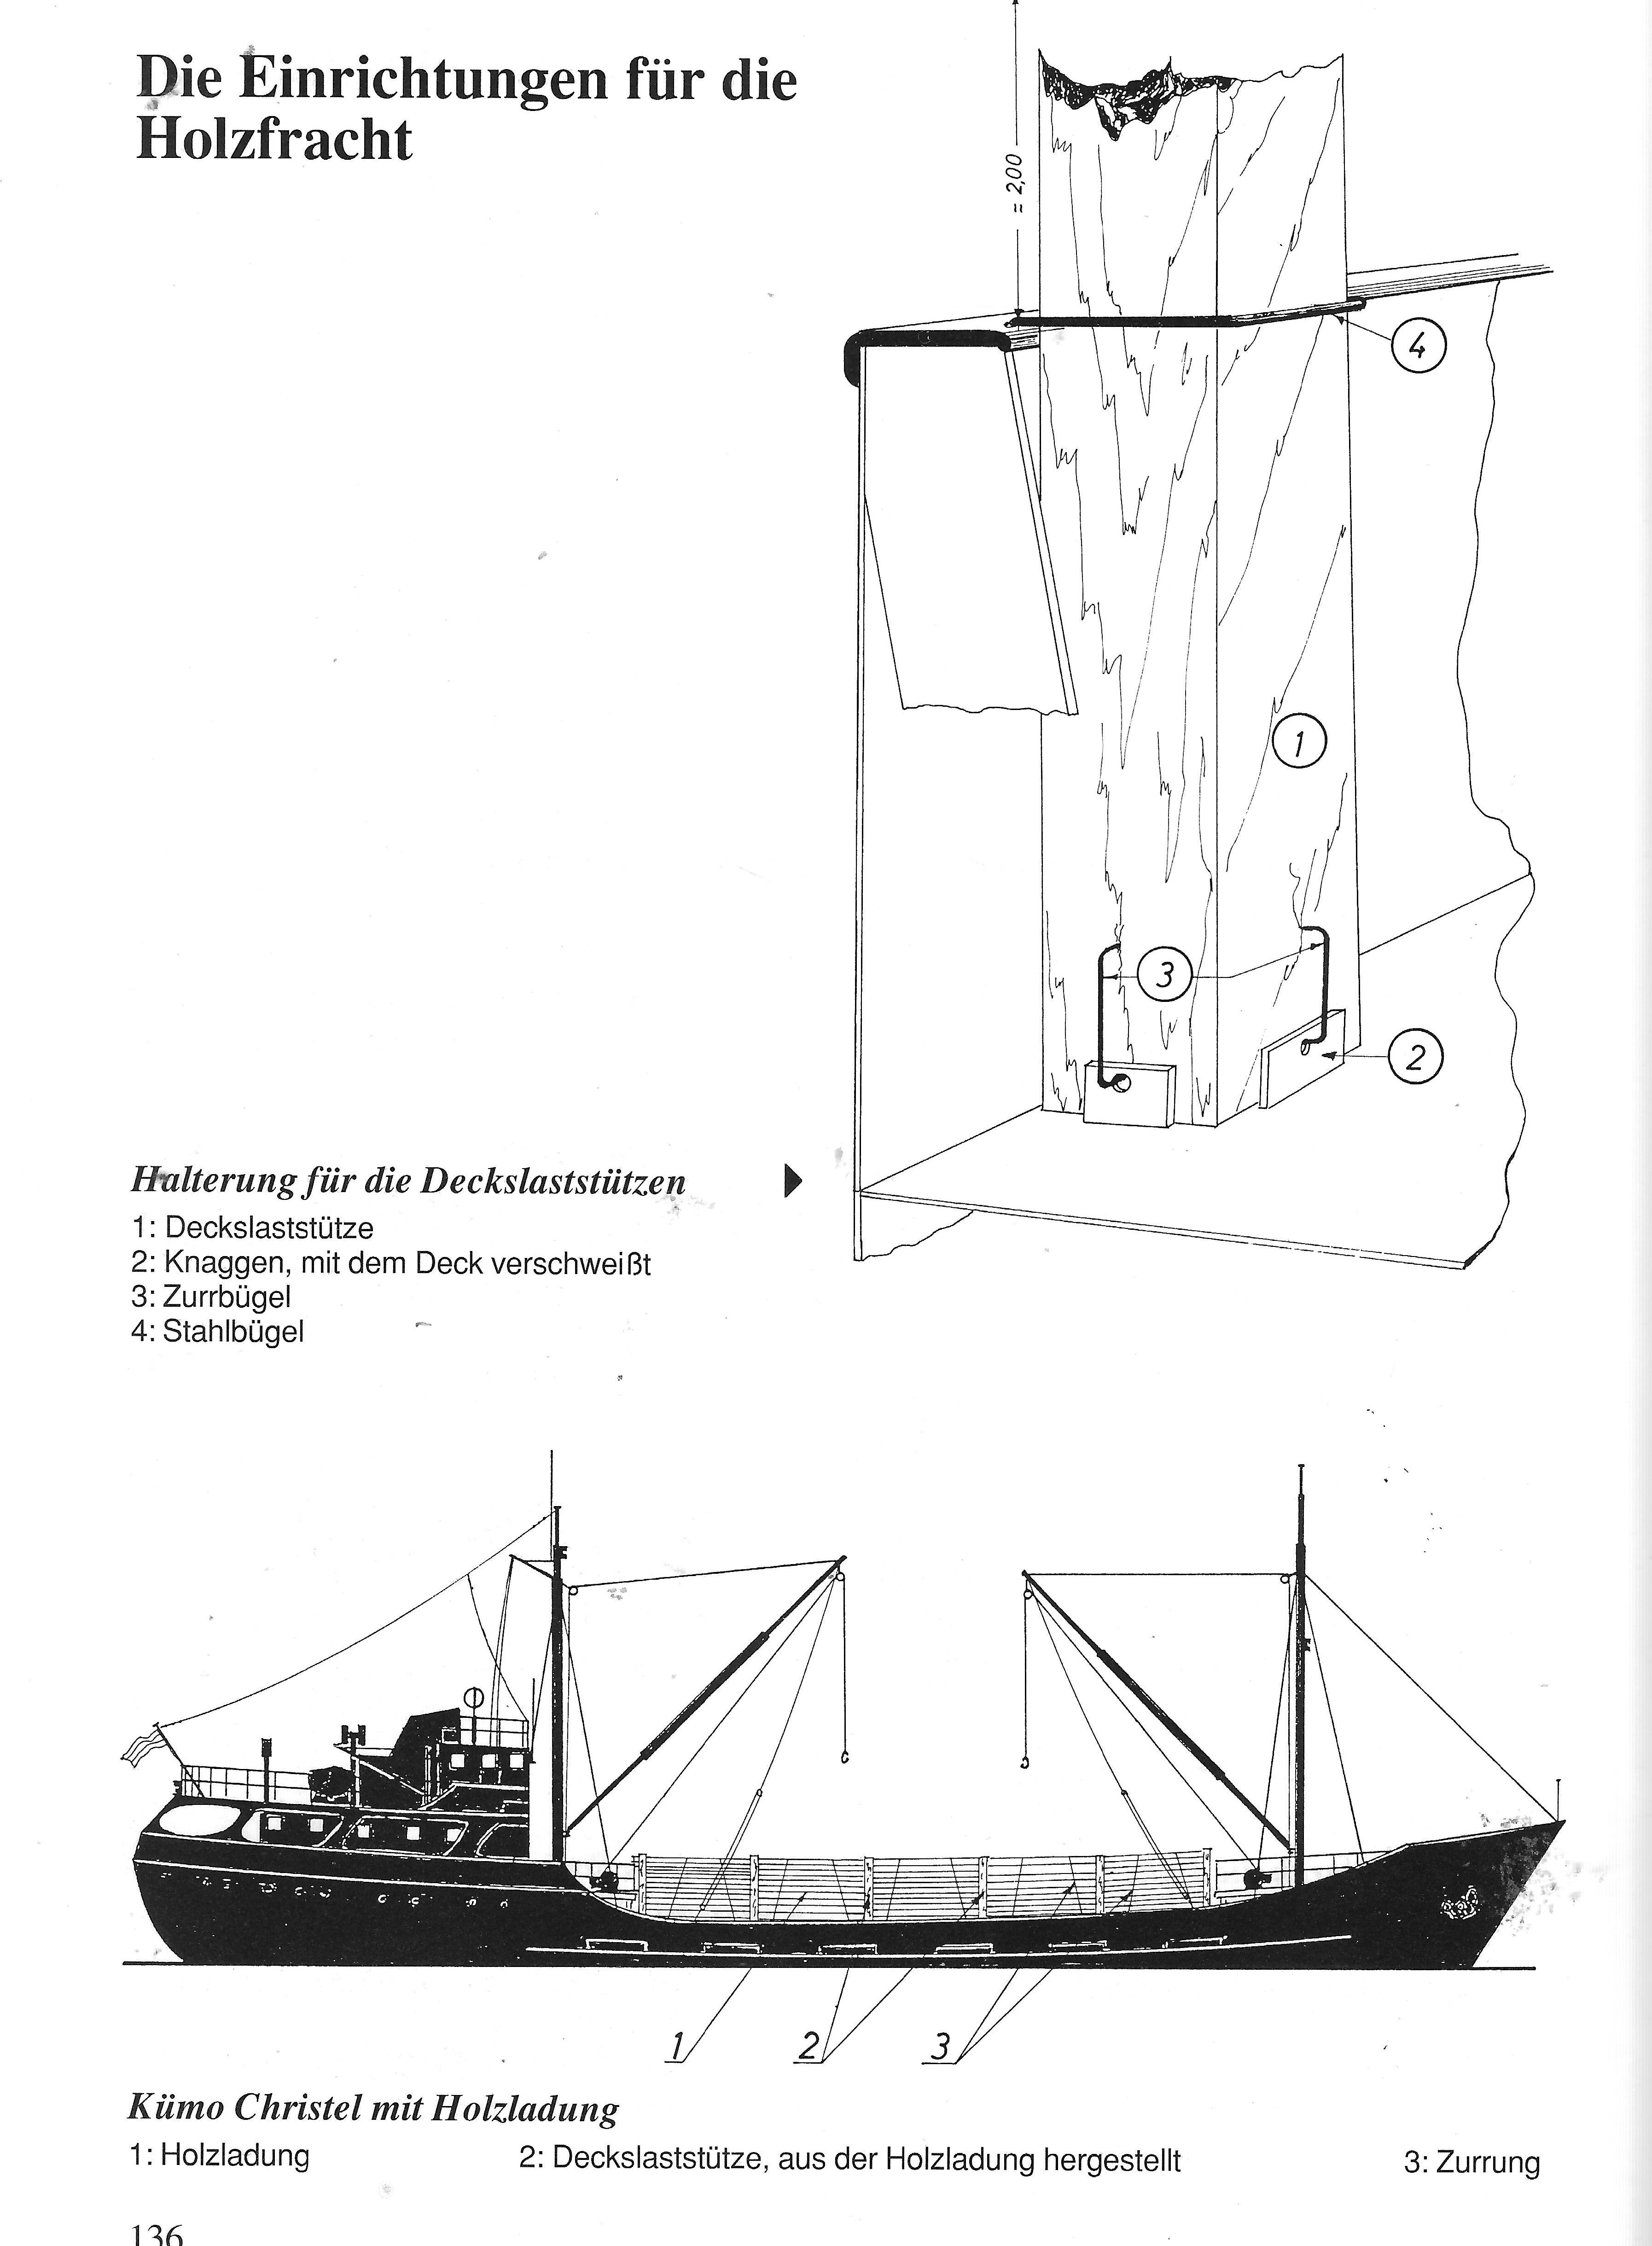  Caboteur MS Greundiek aero-naut 40cf